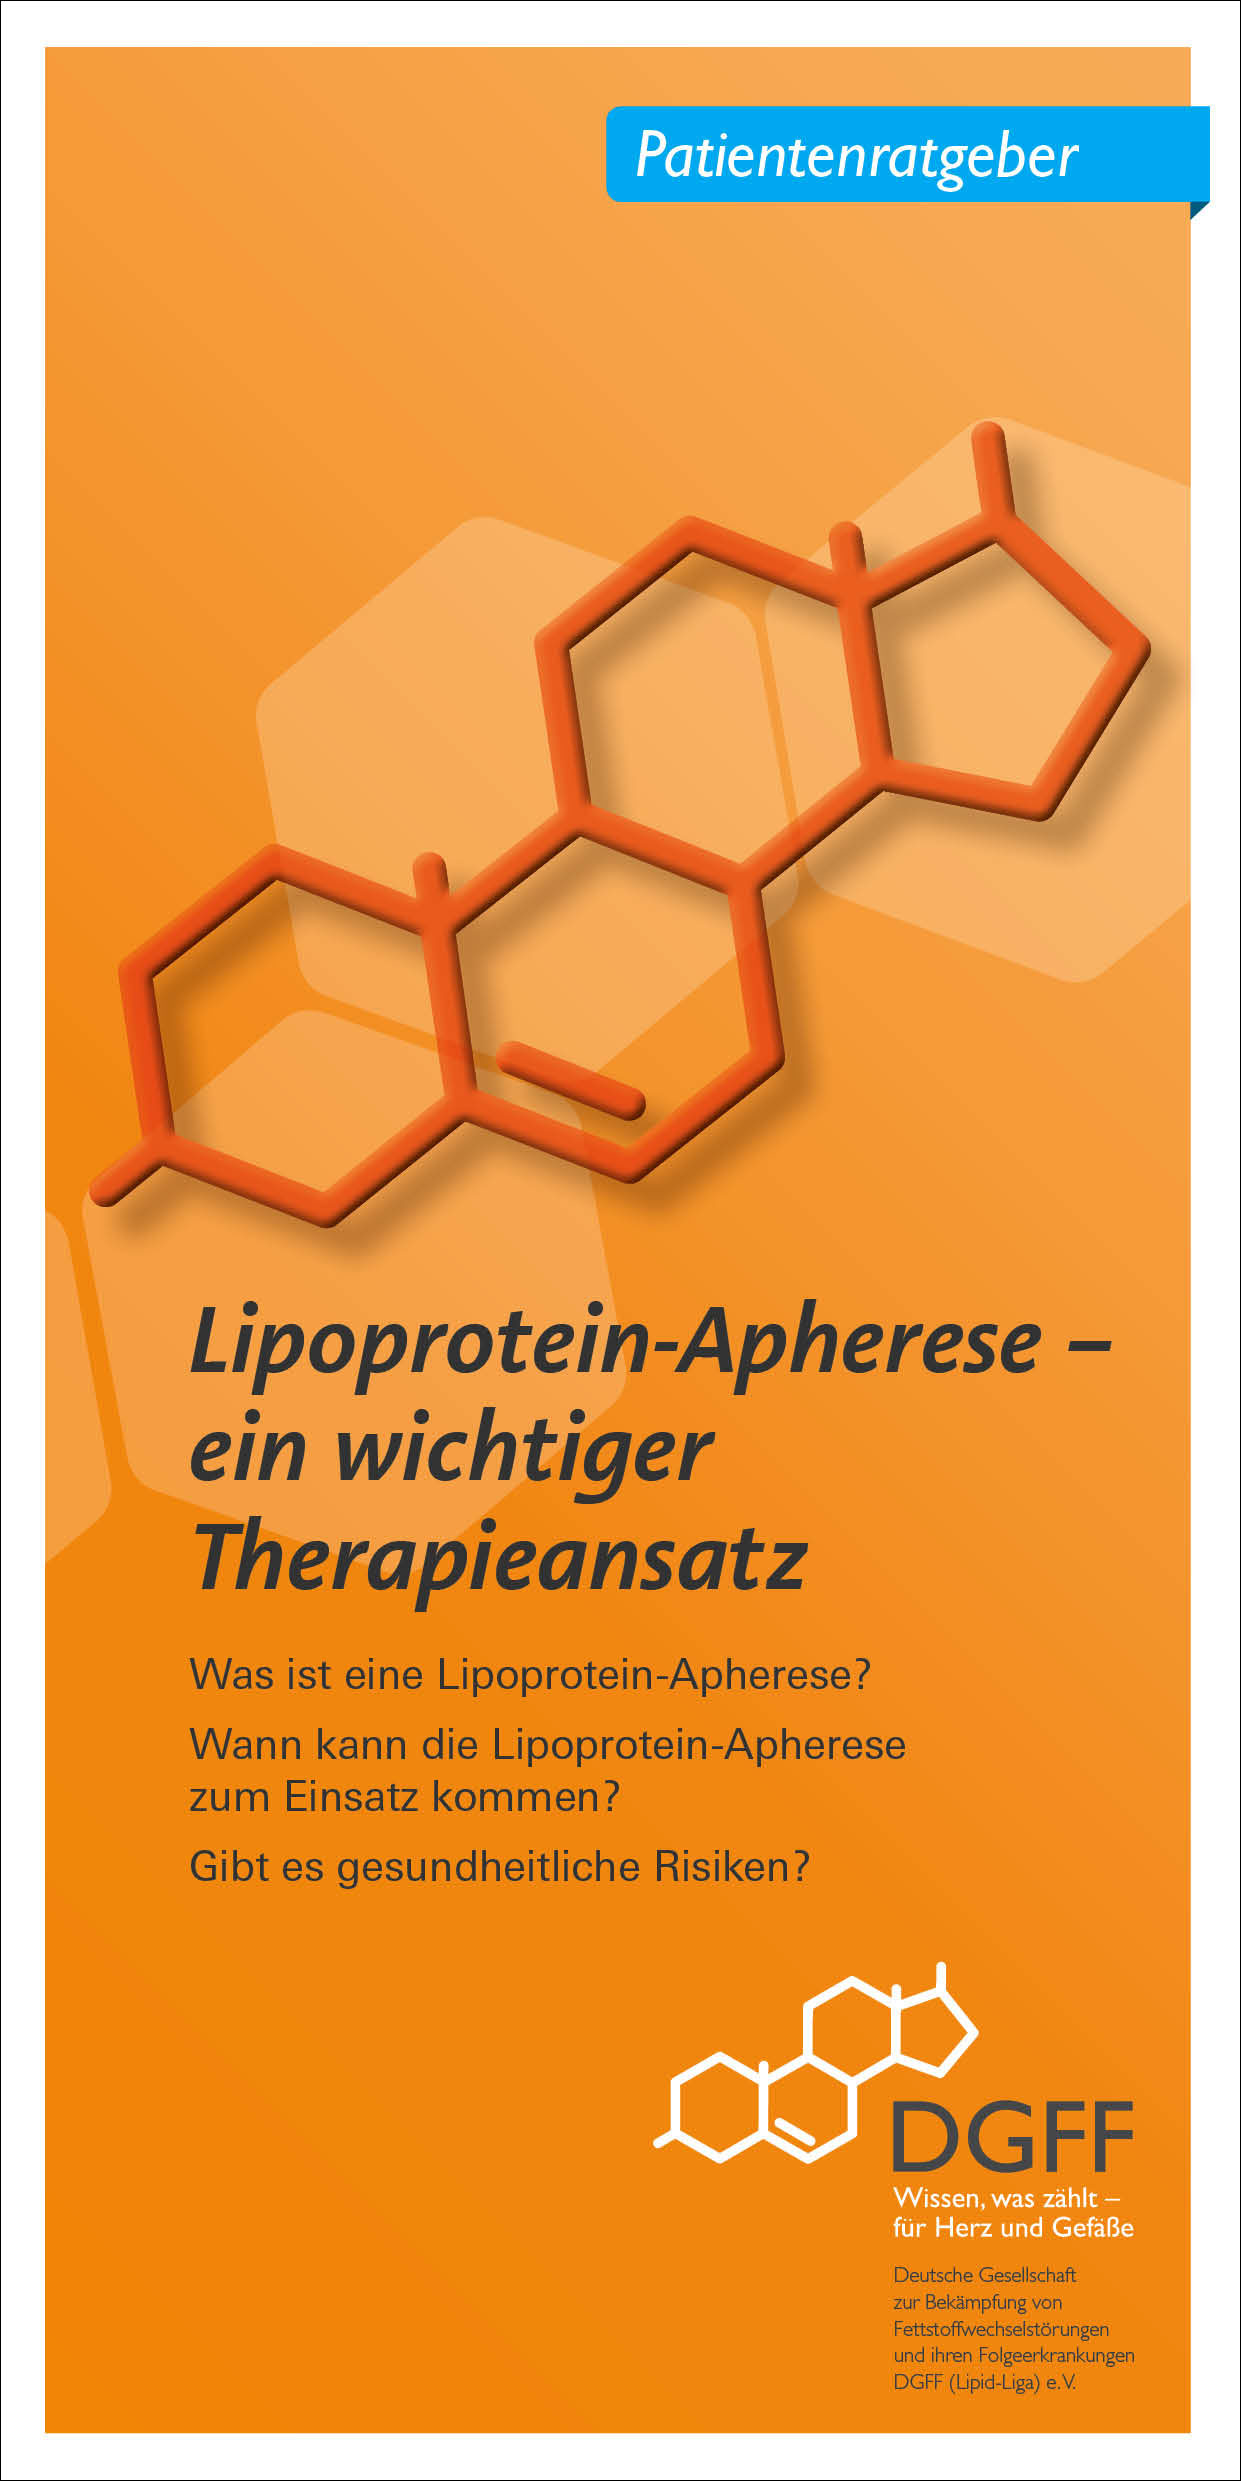 Patientenratgeber Lipoprotein-Apherese – ein wichtiger Therapieansatz